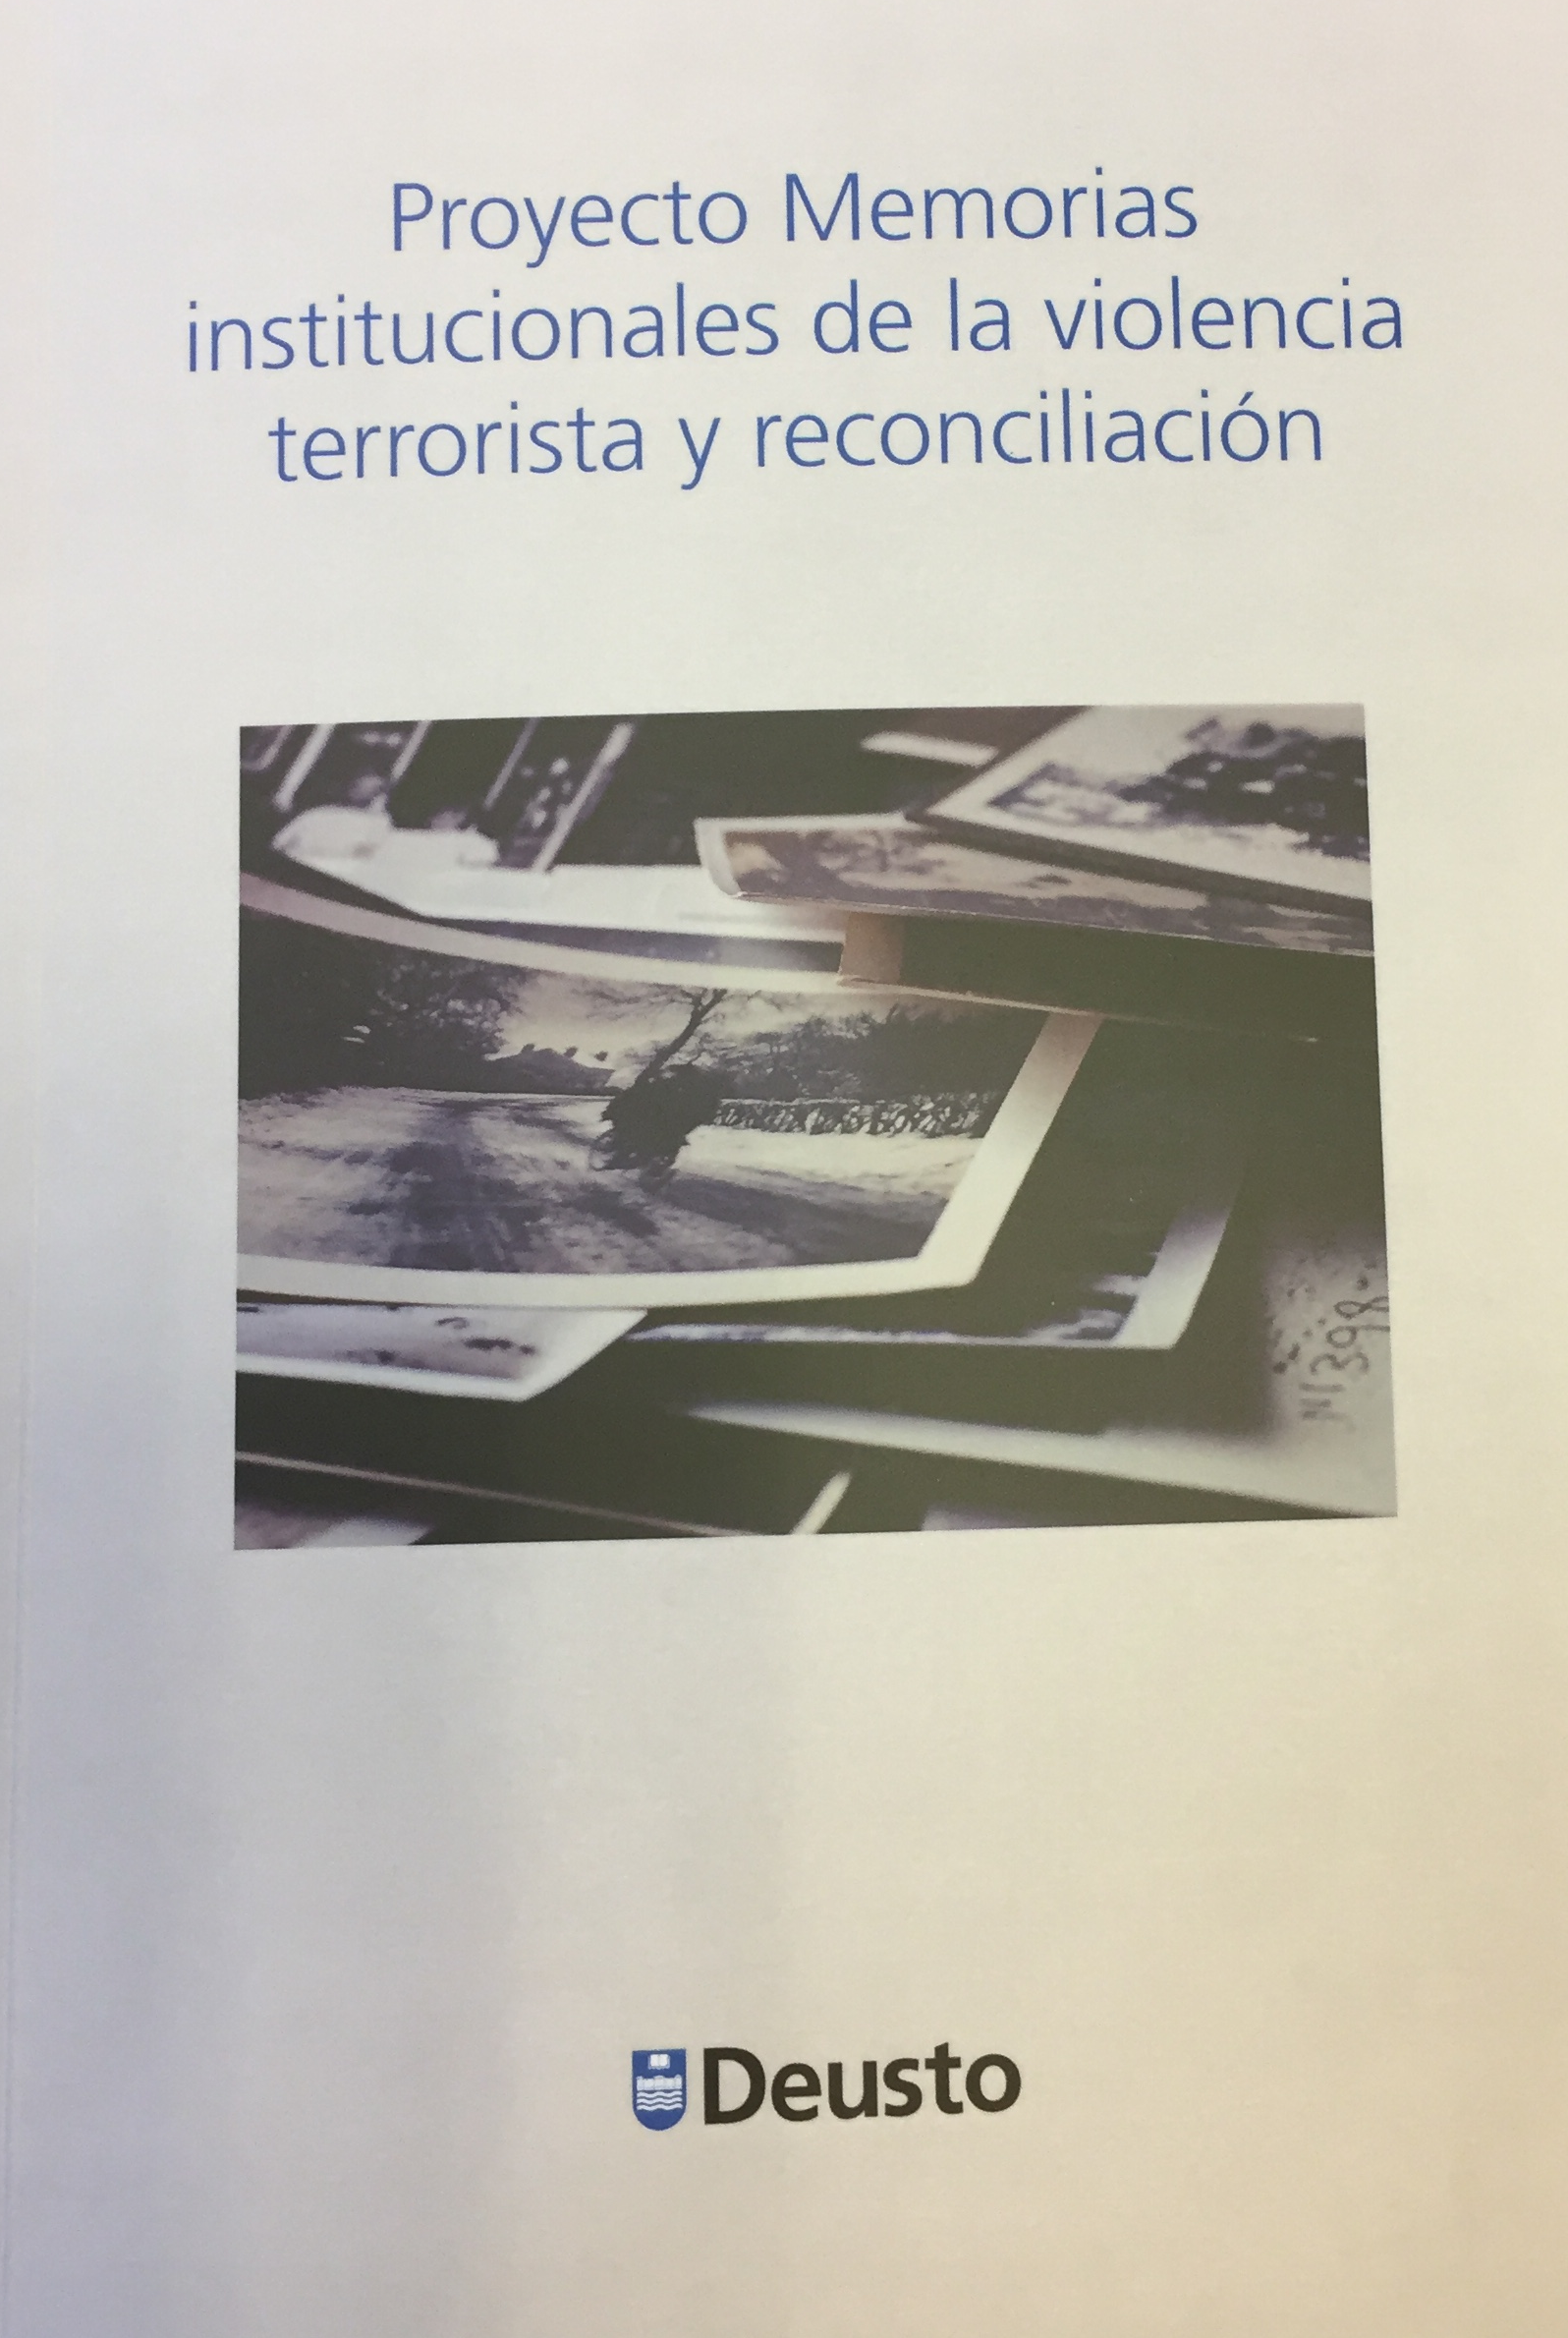 Imagen de portada del libro Proyecto memorias institucionales de la violencia terrorista y reconciliación